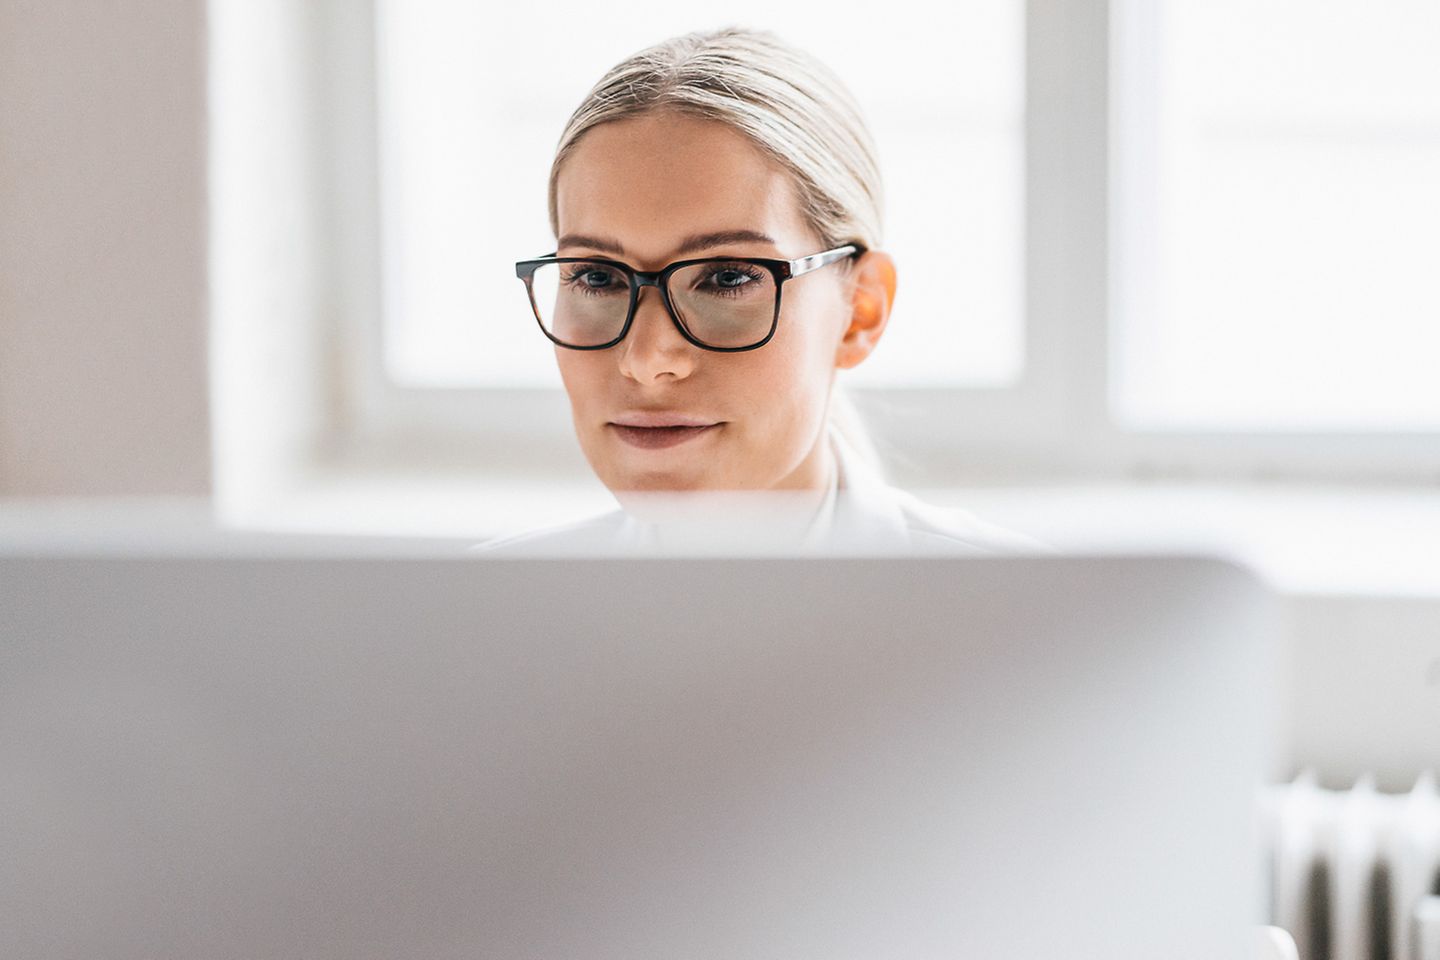 Una mujer joven con gafas oscuras está sentada detrás del monitor